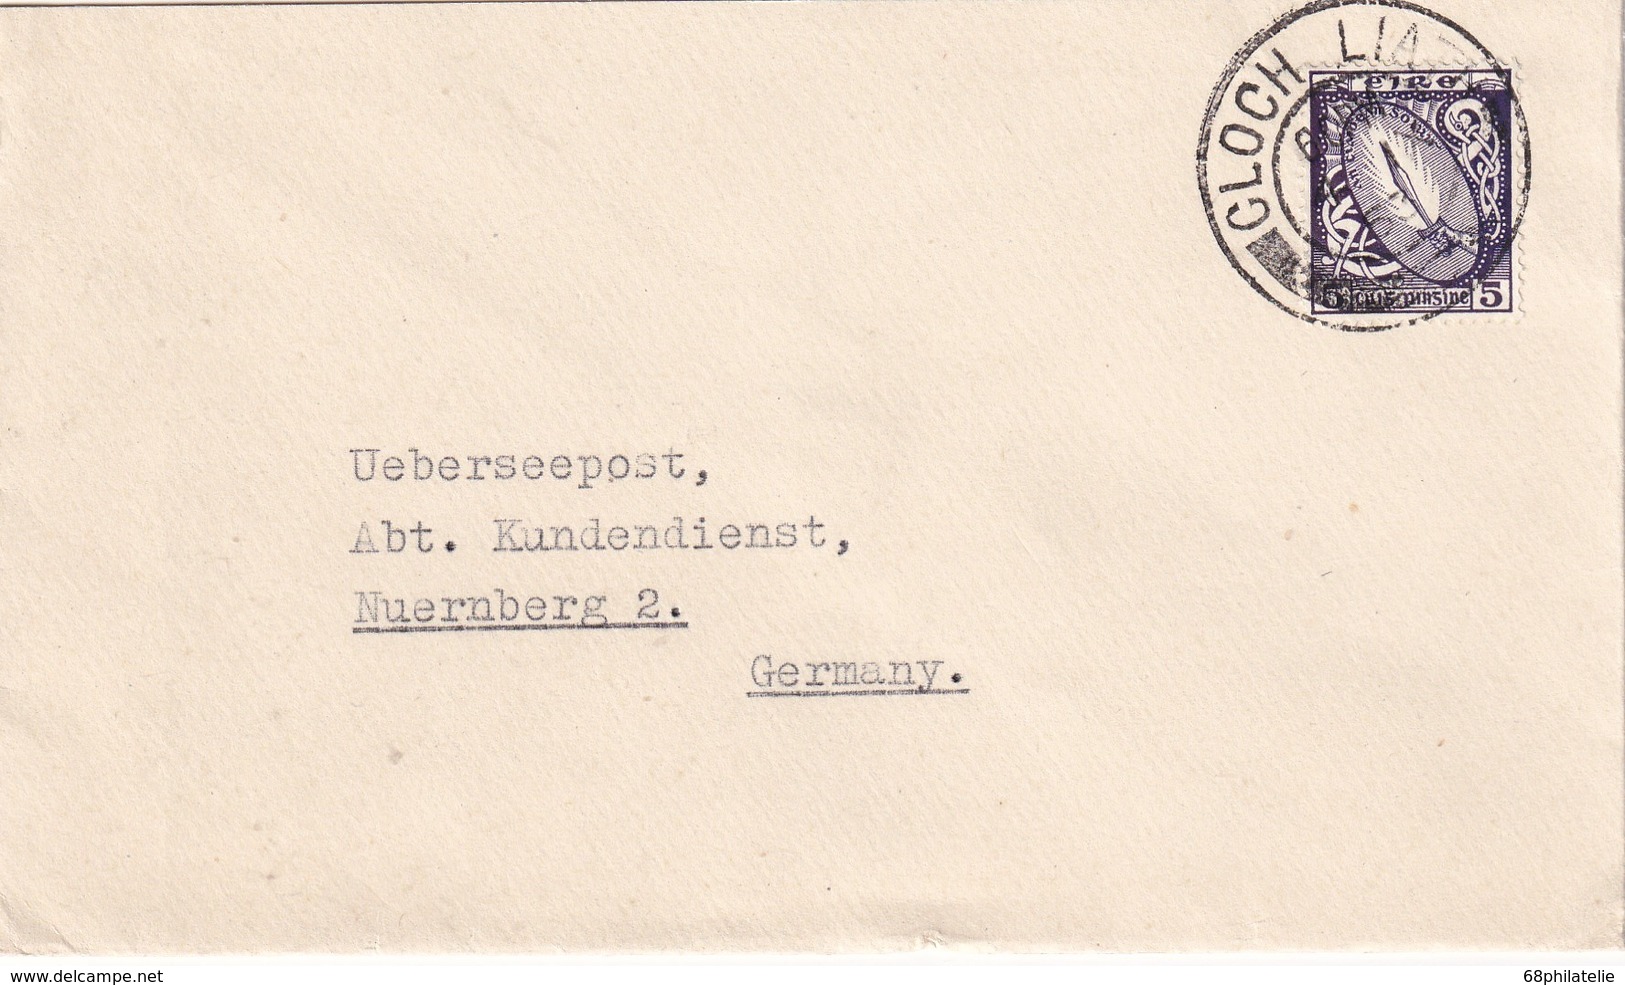 EIRE 1953 LETTRE DE CLOCHAN LIATH - Lettres & Documents